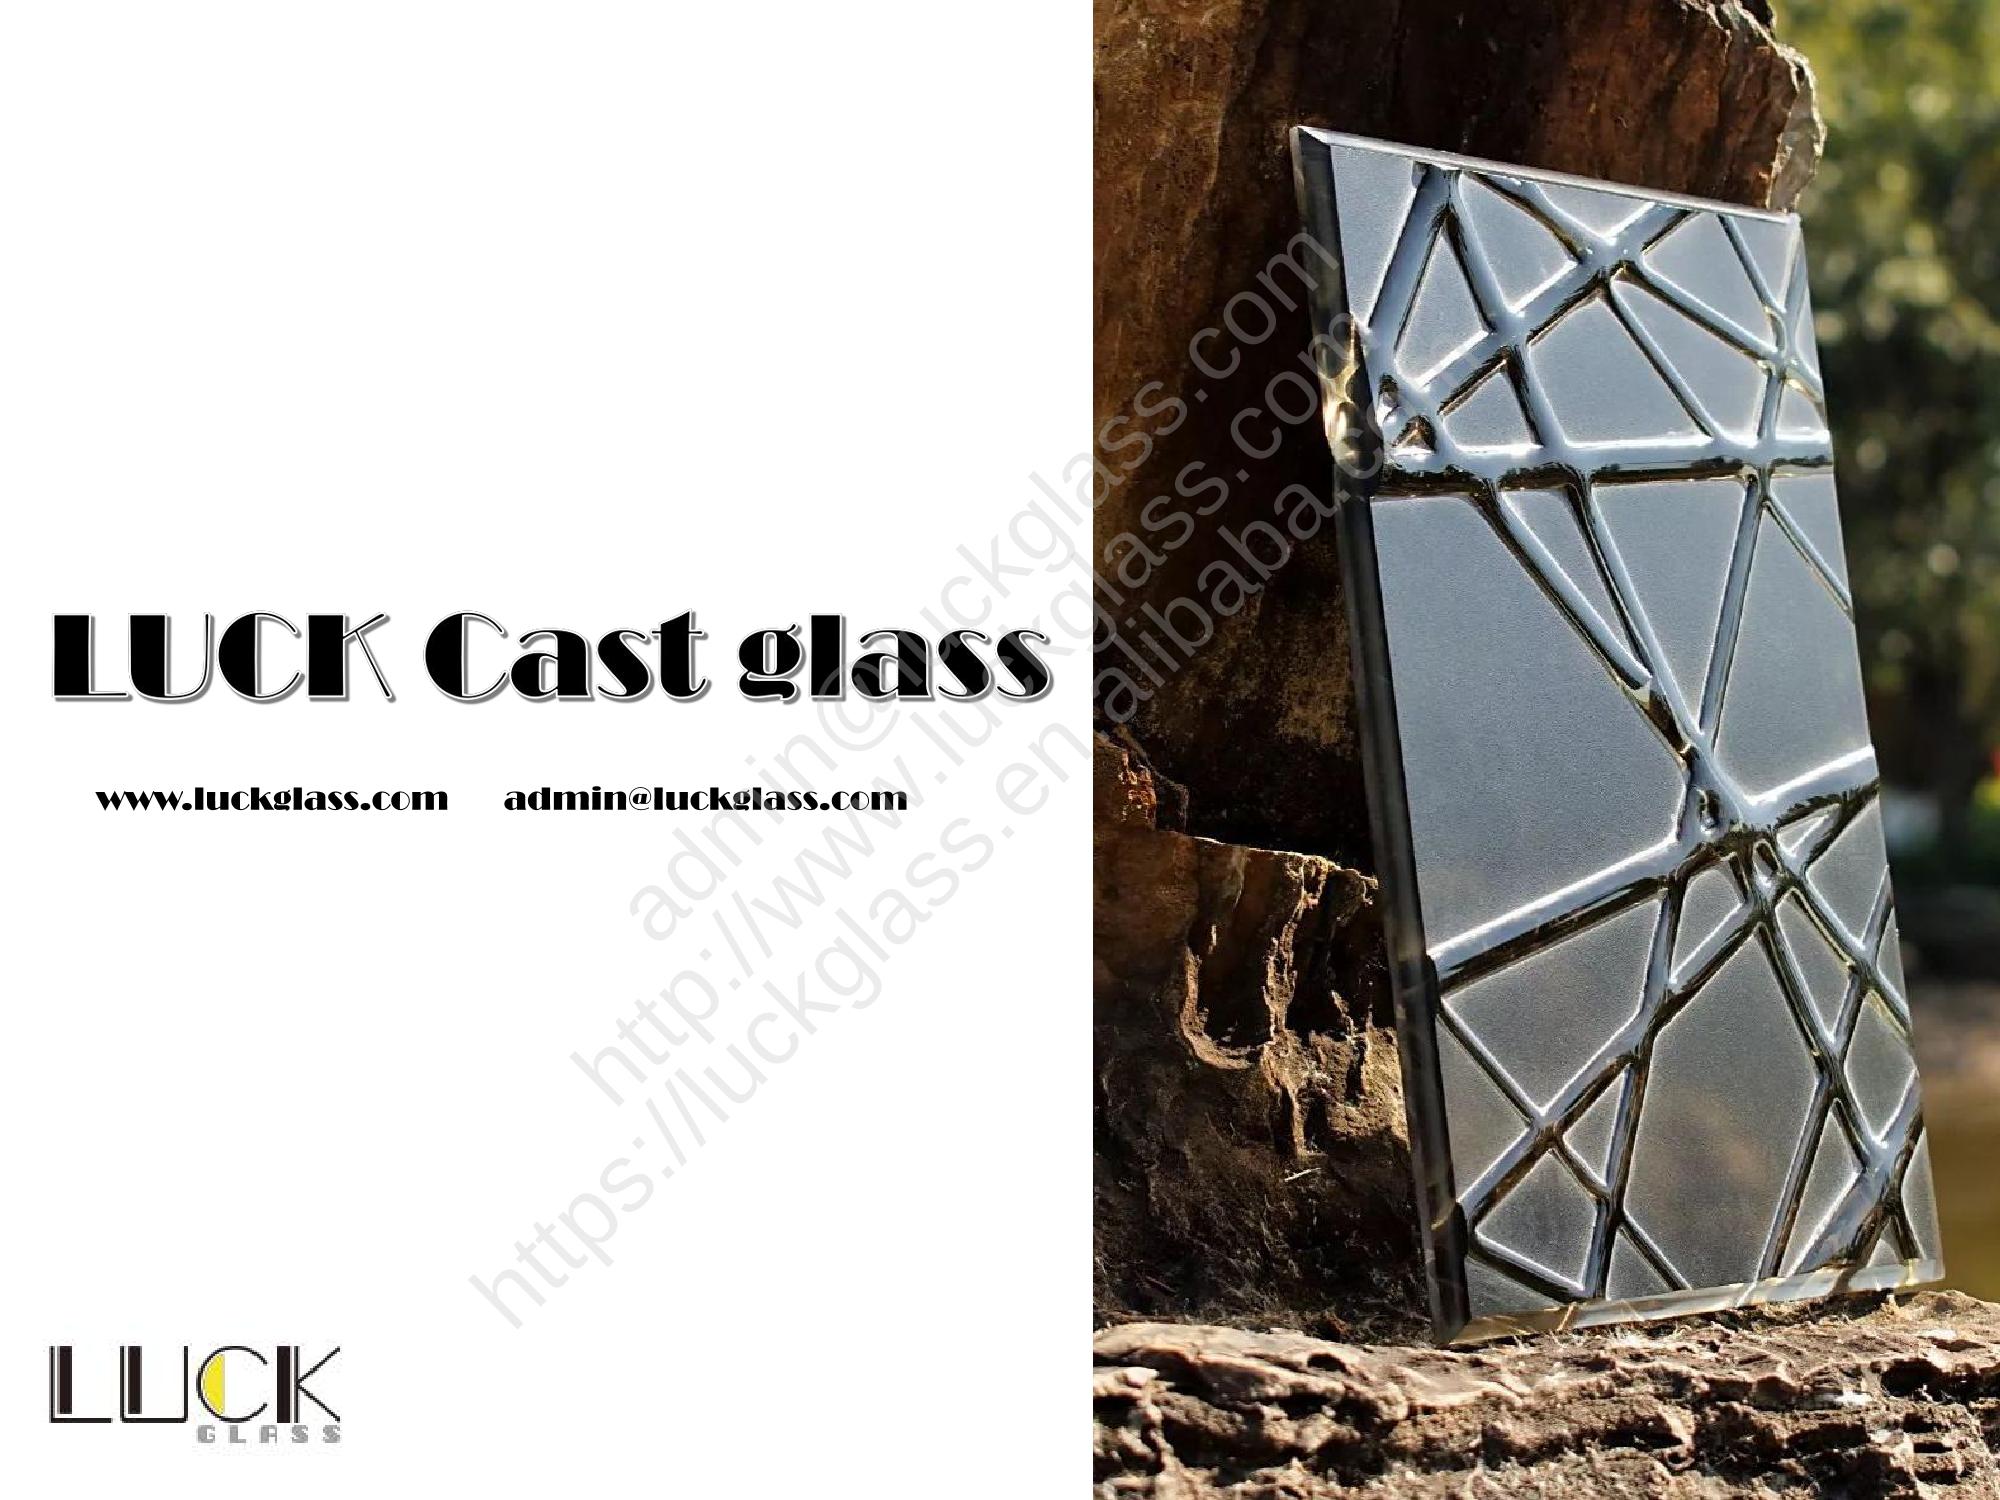 Luck Cast Glass_18.jpg